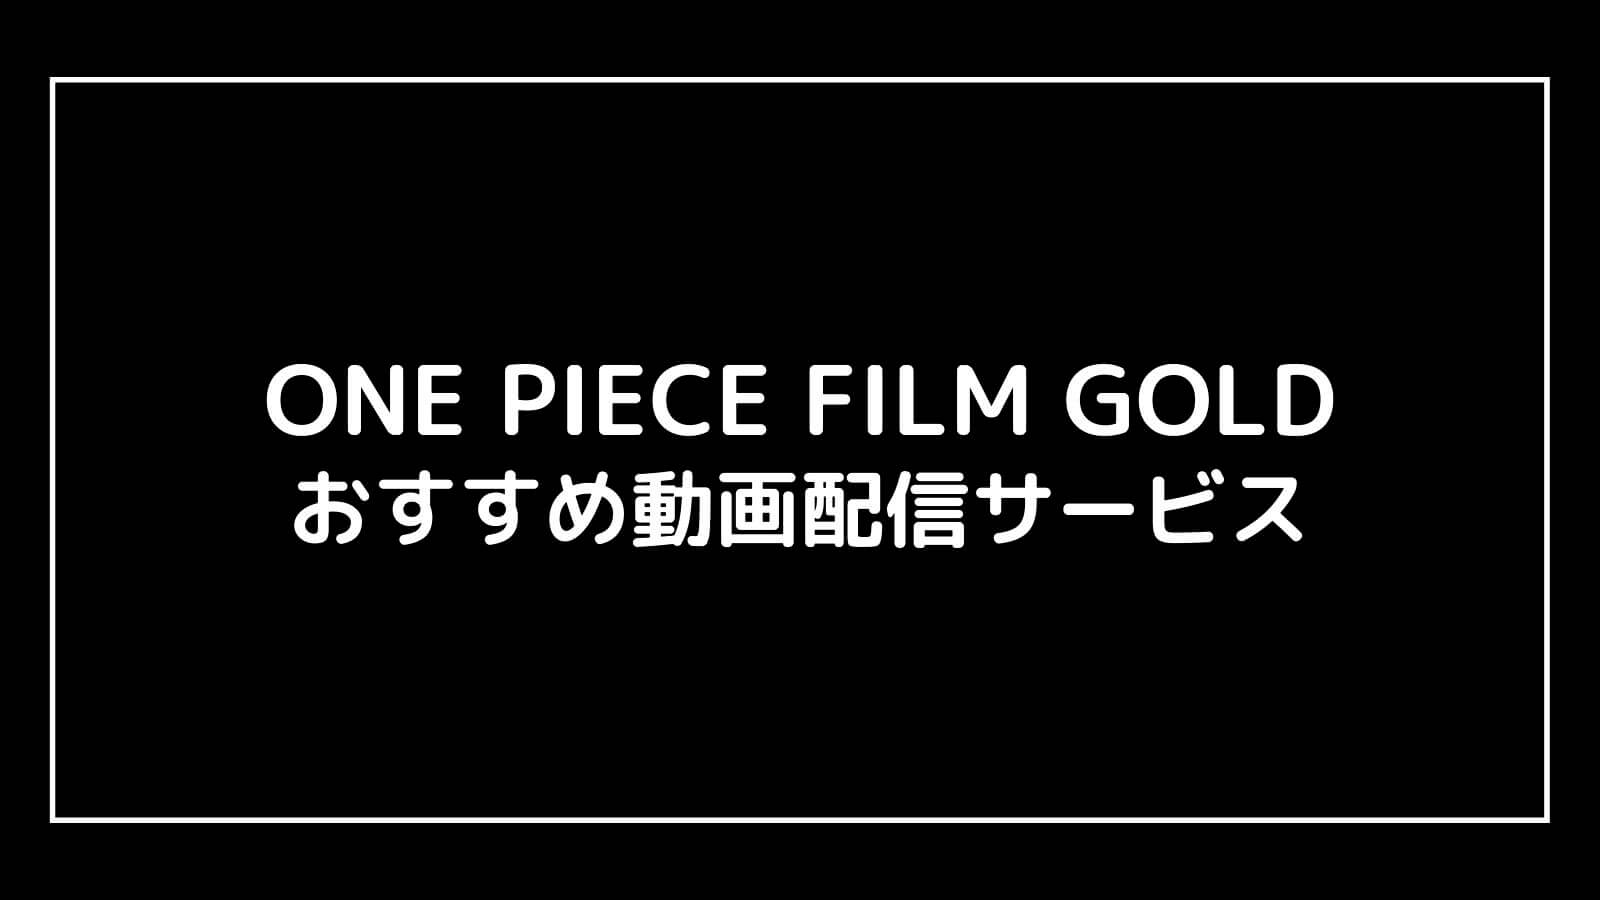 映画『ONE PIECE ワンピース FILM GOLD』の無料動画配信をフル視聴できるおすすめサブスクまとめ